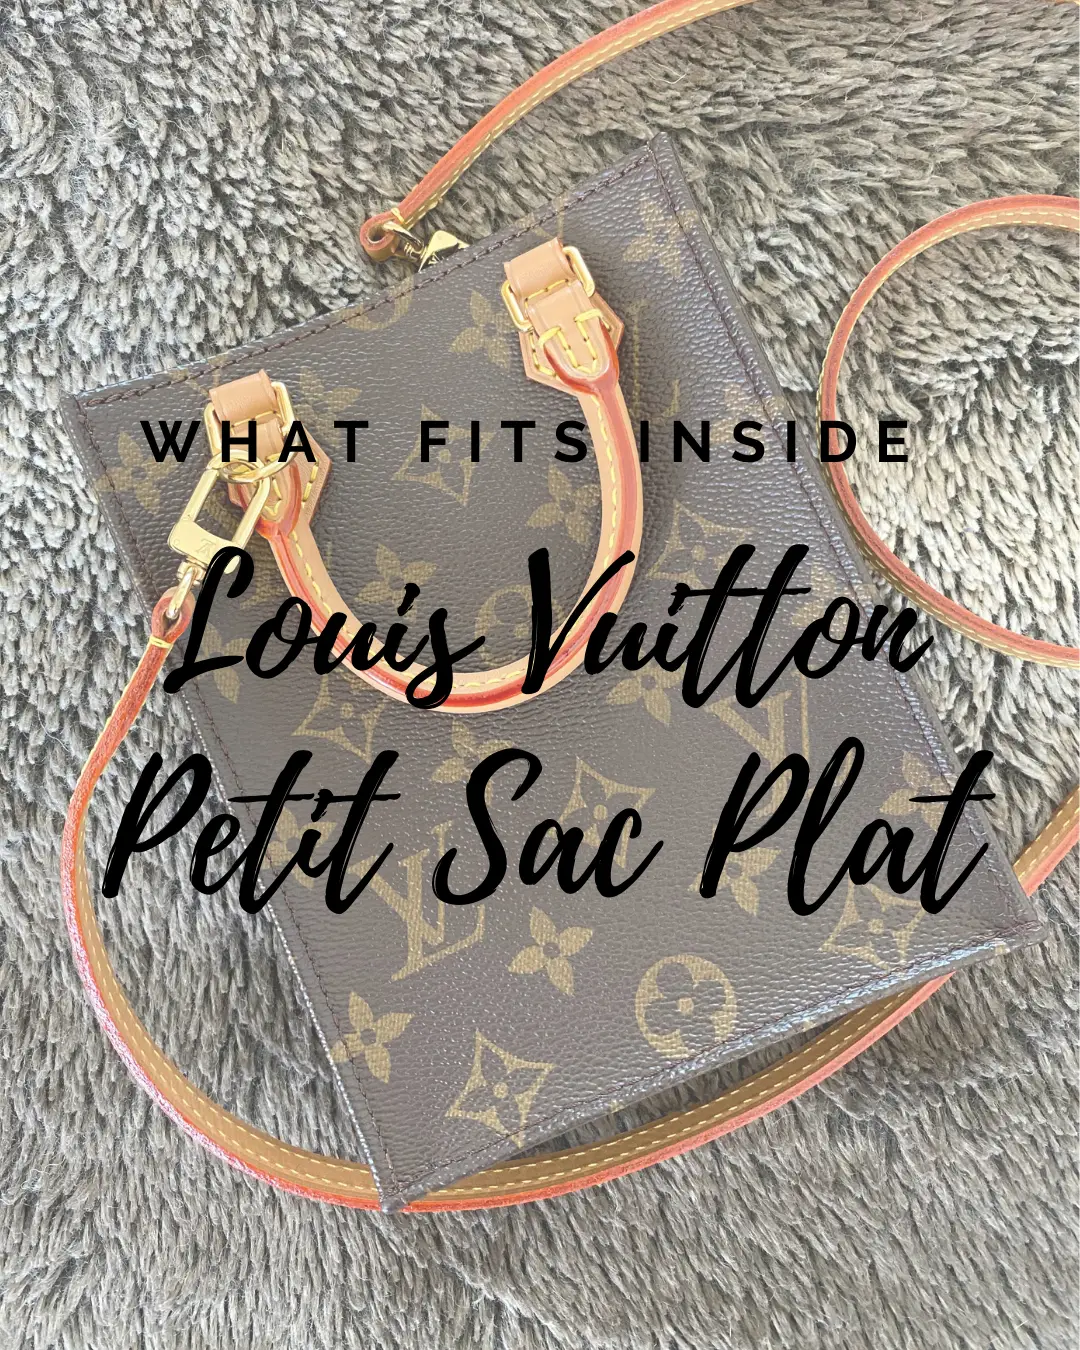 Louis Vuitton Petit Sac Plat Loop